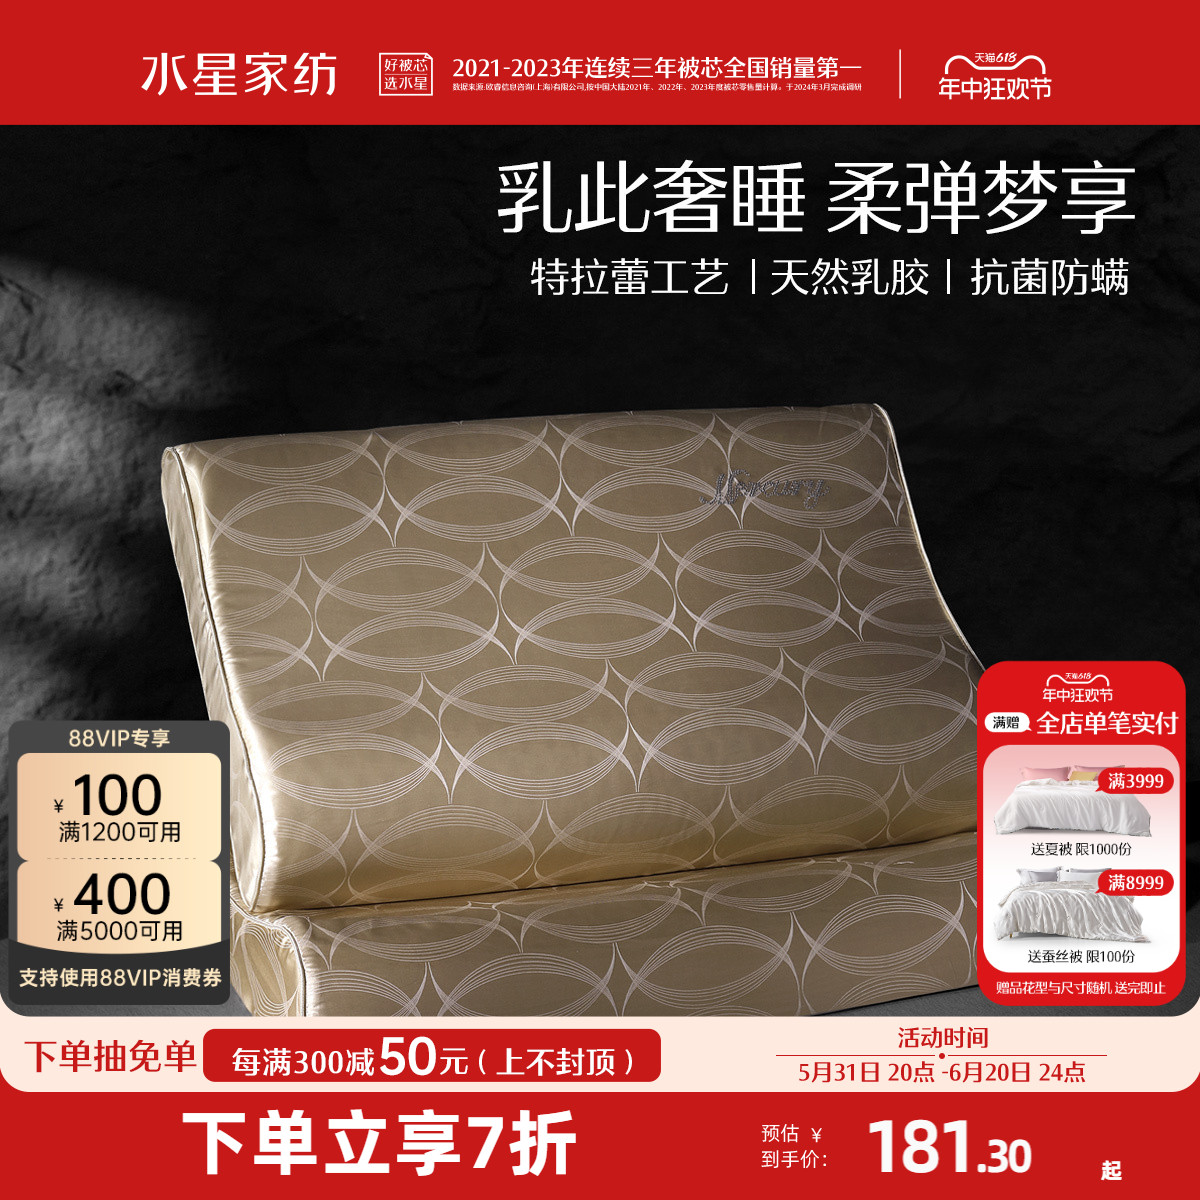 水星家纺泰国进口乳胶枕60S长绒棉抗菌桑蚕丝枕枕头枕芯床上用品